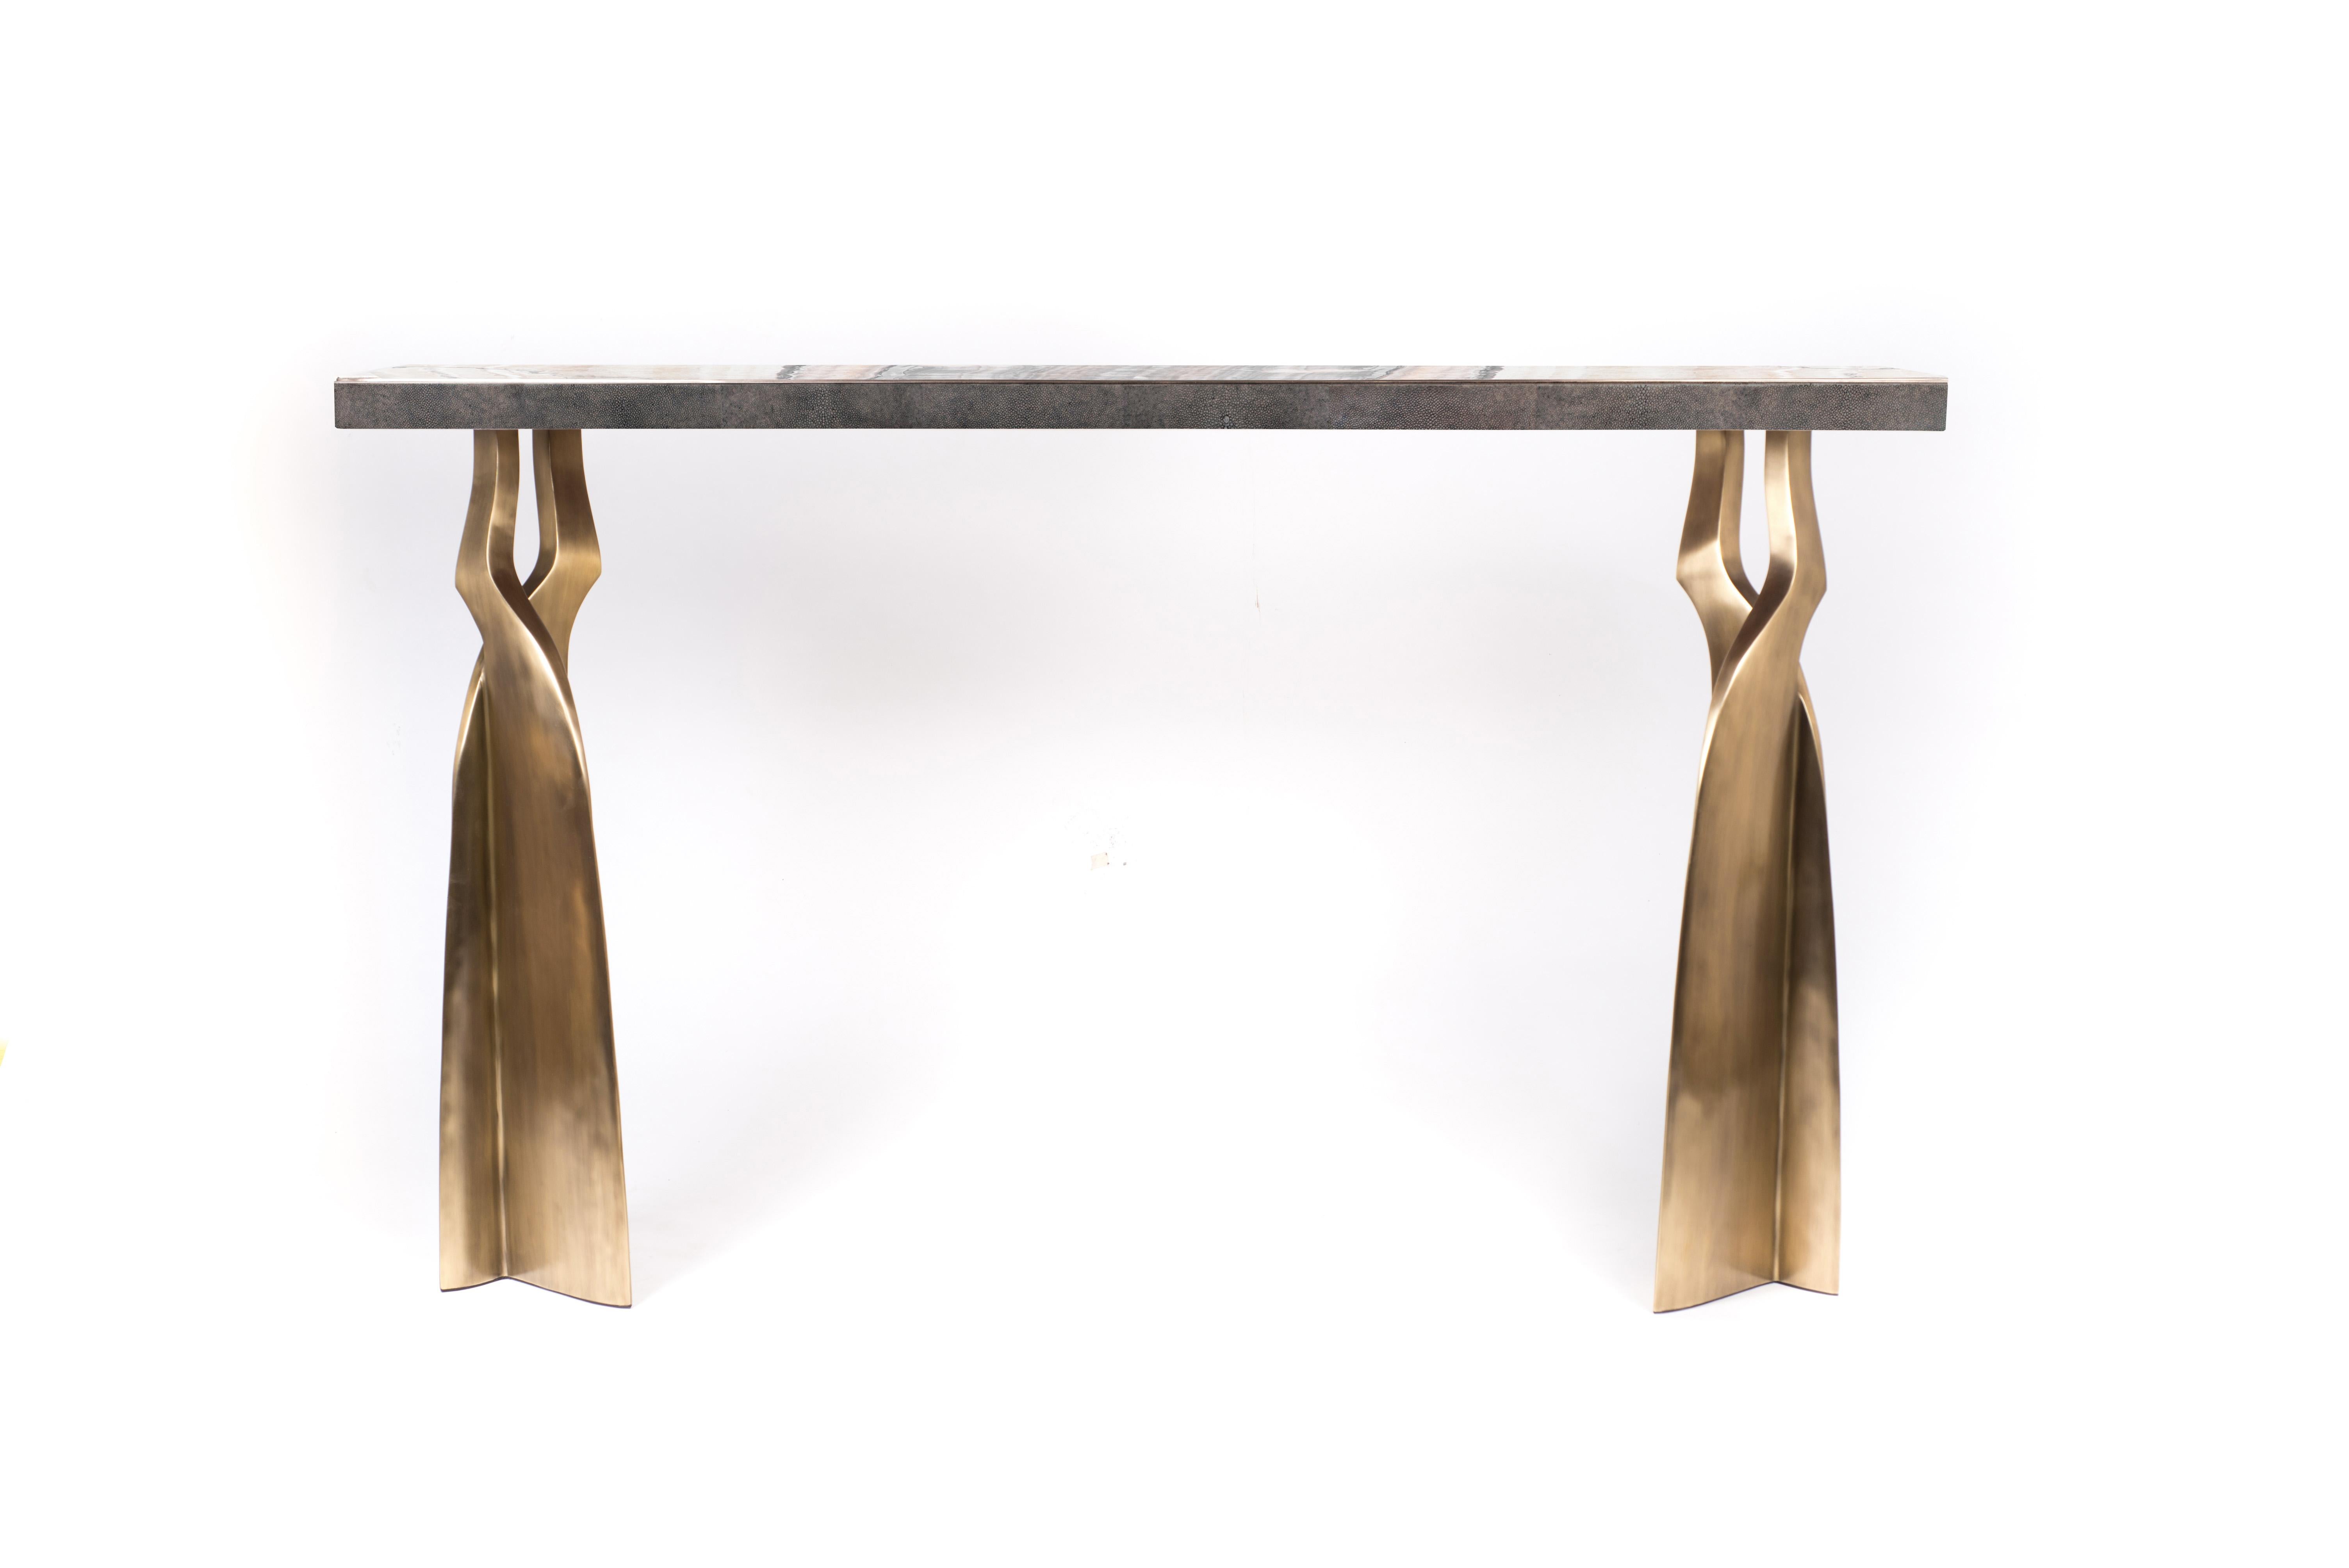 La table console Chital est à la fois spectaculaire et organique grâce à son design unique. Le plateau incrusté d'onyx, avec ses bordures latérales incrustées de galuchat noir de charbon, repose sur une paire de pieds éthérés et sculpturaux en